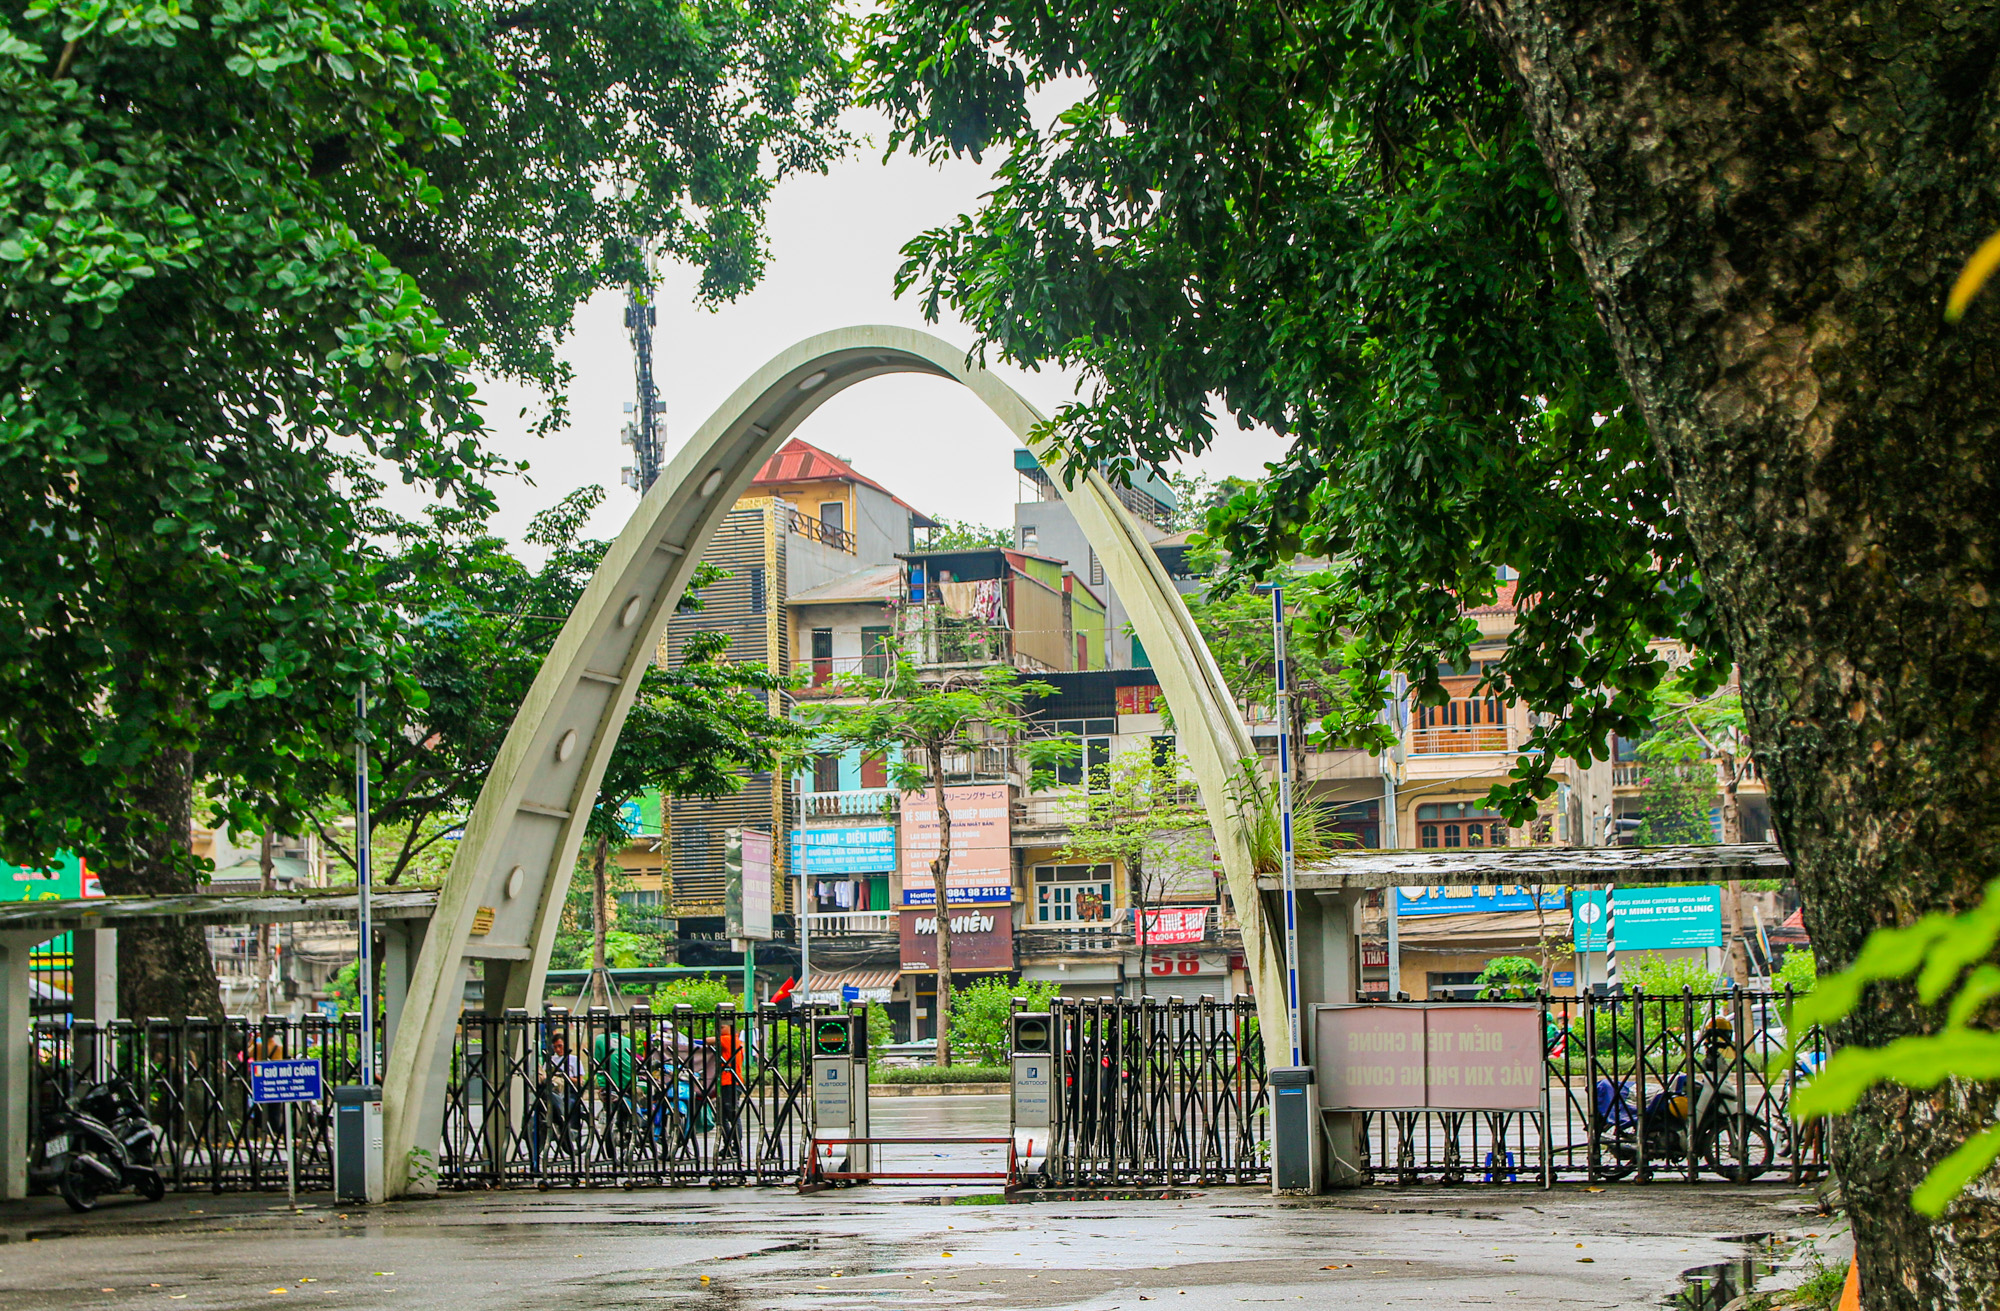 Trường đại học rộng nhất trung tâm Hà Nội, sinh viên phải tra bản đồ để tìm đường - Ảnh 4.